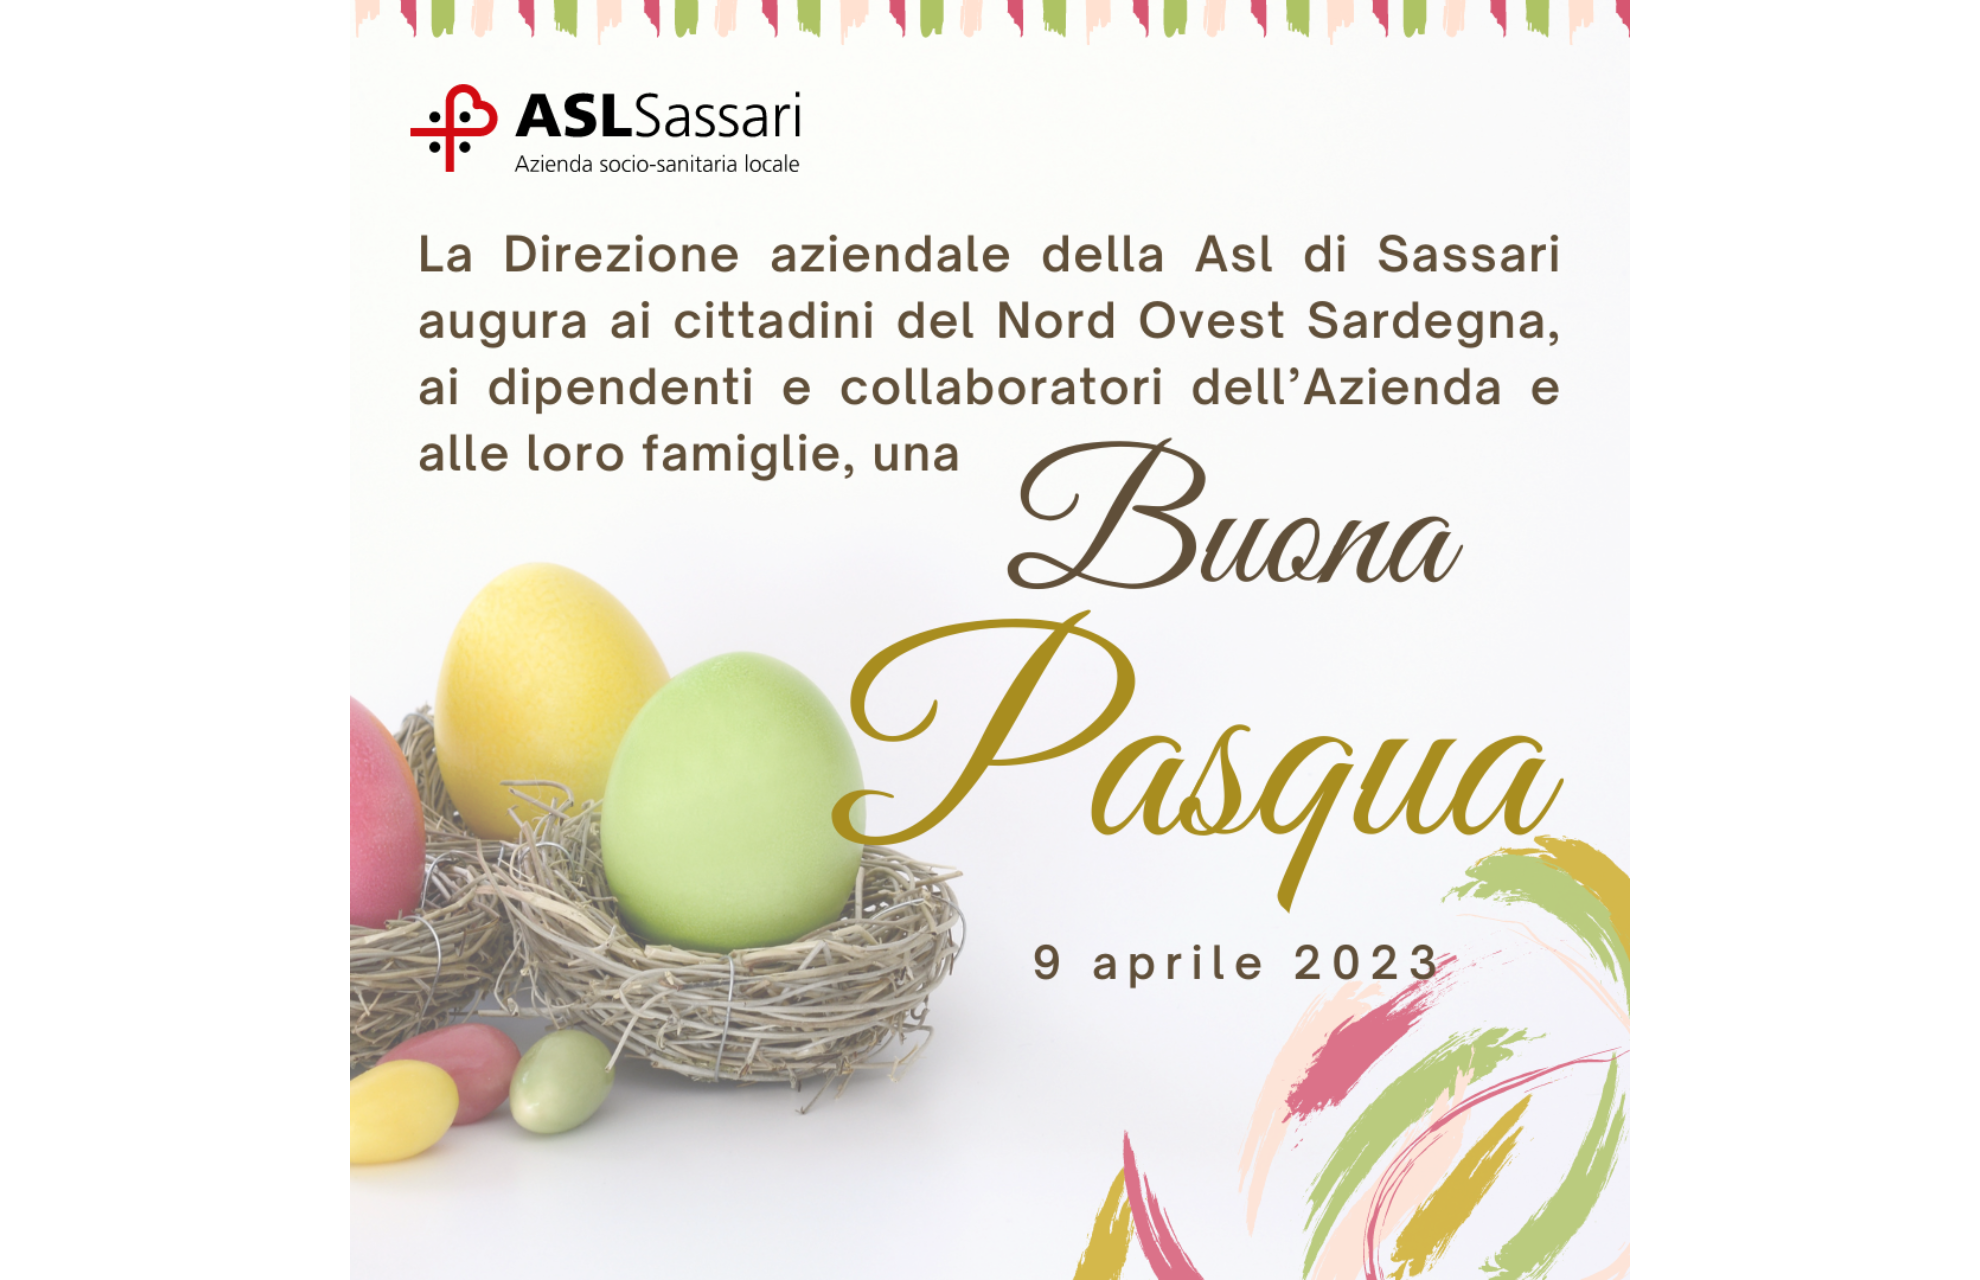 Buona Pasqua dalla Direzione Aziendale della Asl di Sassari